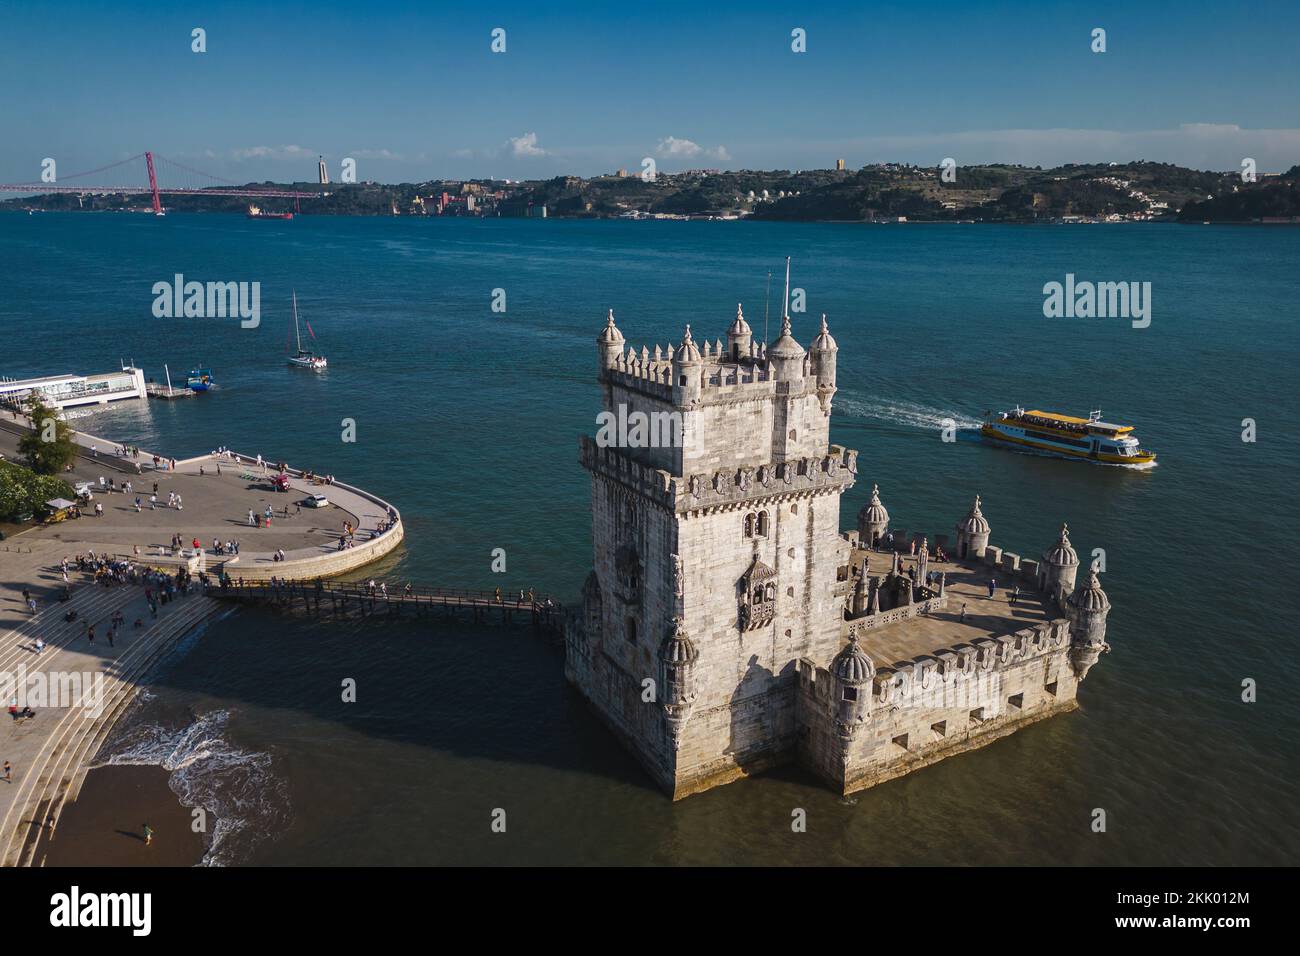 Vista aérea de la histórica torre Belem (en portugués: Torre de Belem) en la orilla norte del río Tajo en Lisboa, Portugal. Foto de stock